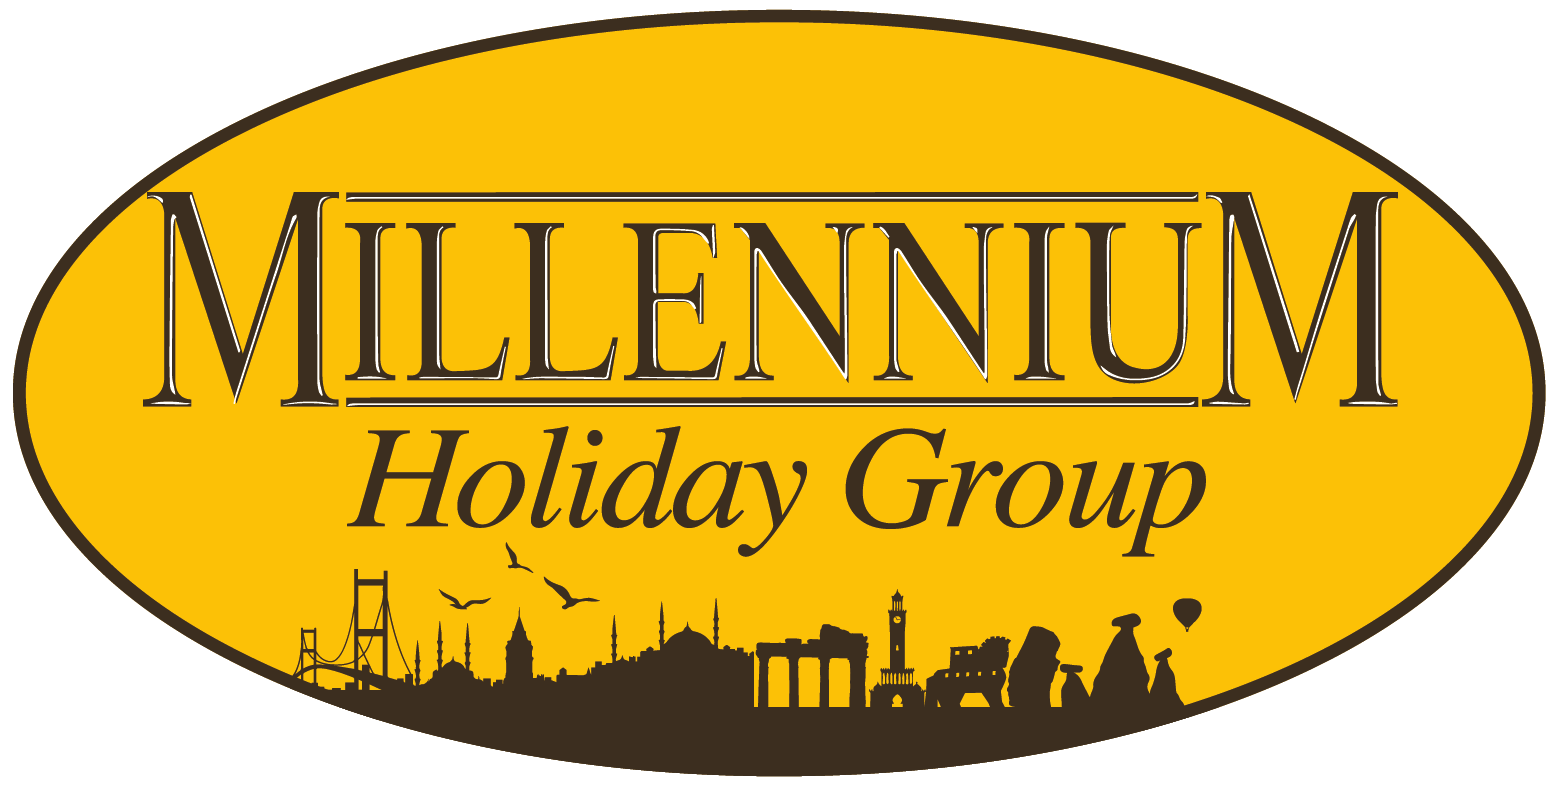 Holiday group. Миллениум логотип. Специализированный застройщик Миллениум логотип.